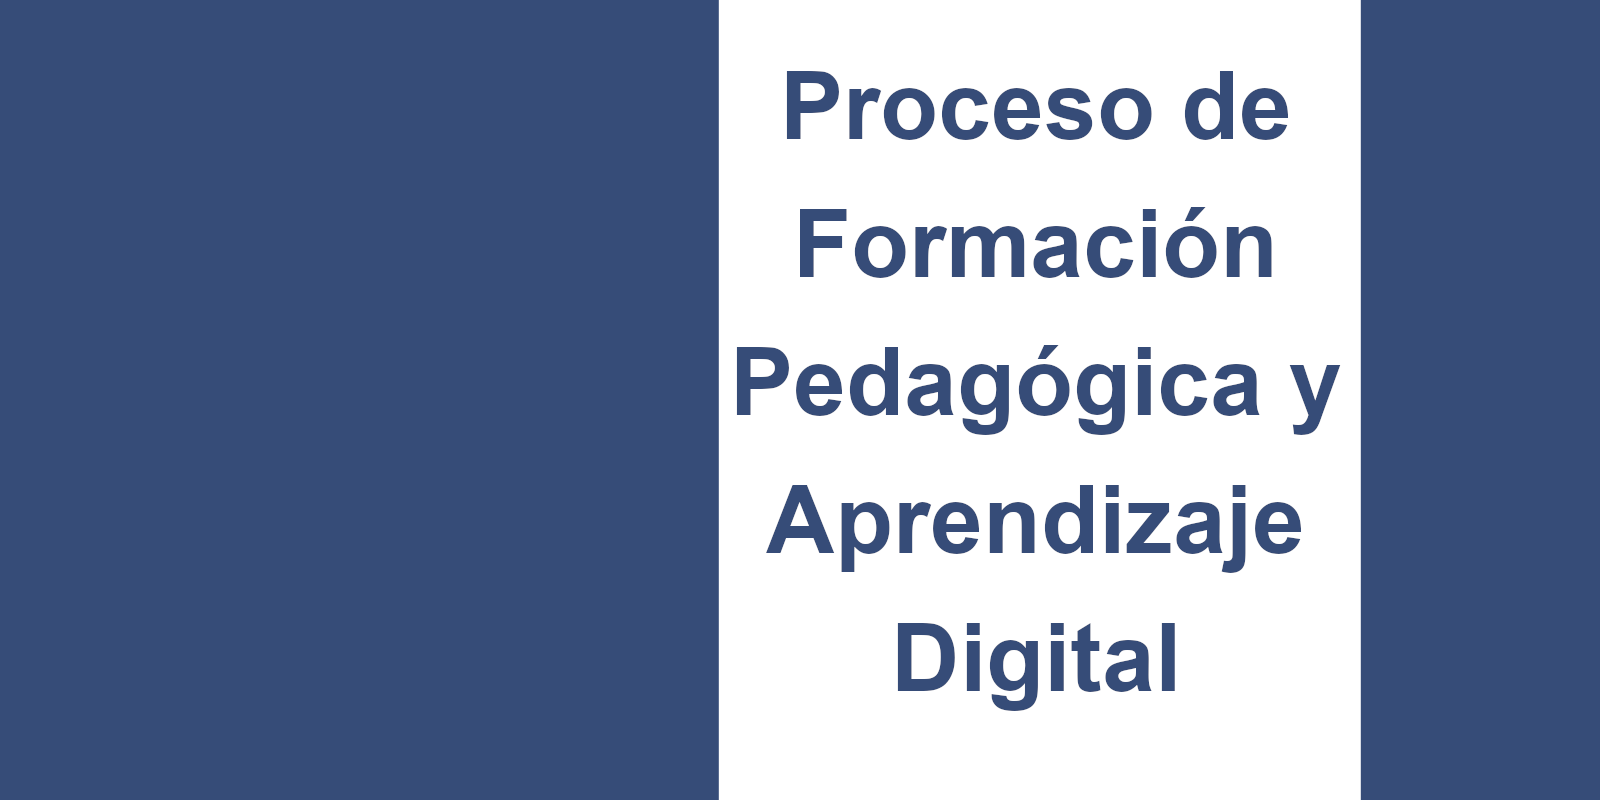 Proceso de Formación Pedagógica y Aprendizaje Digital